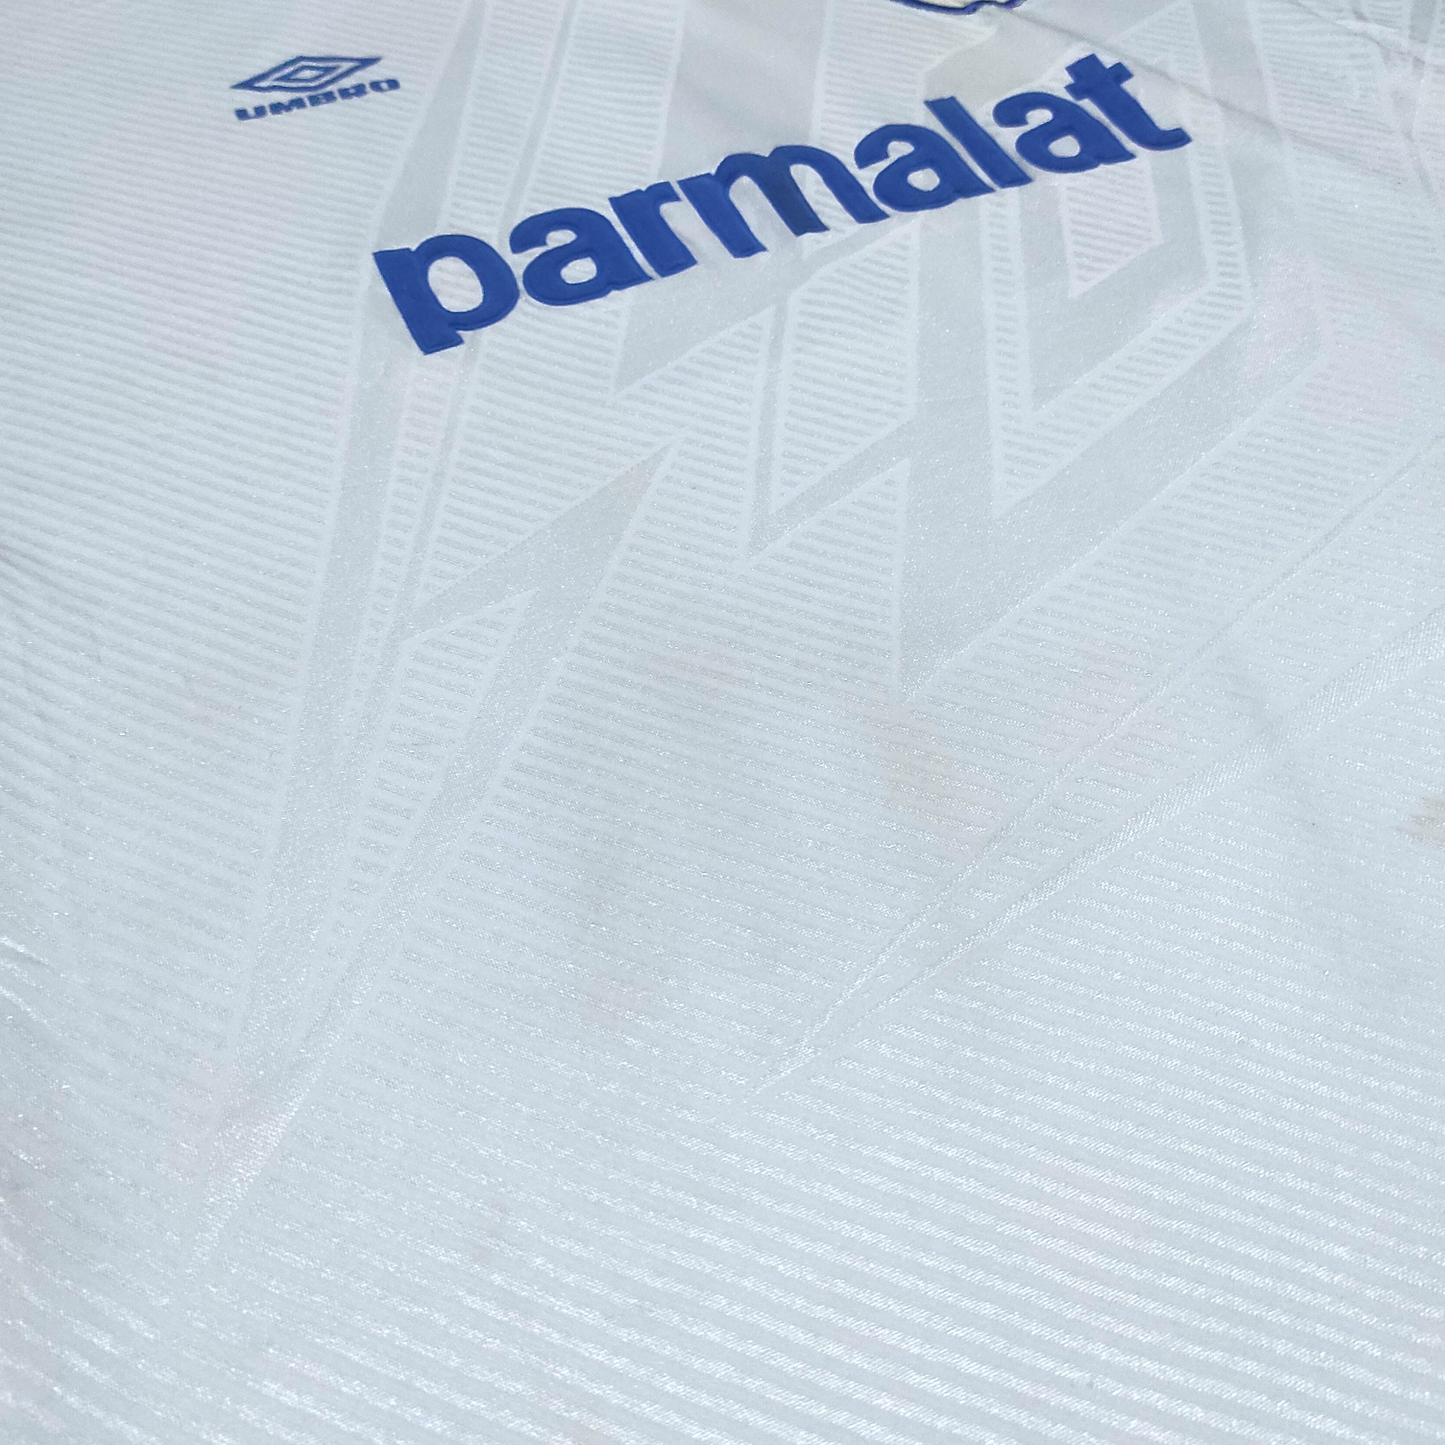 Parma Home Shirt 1993-1995 #10 Zola (L)